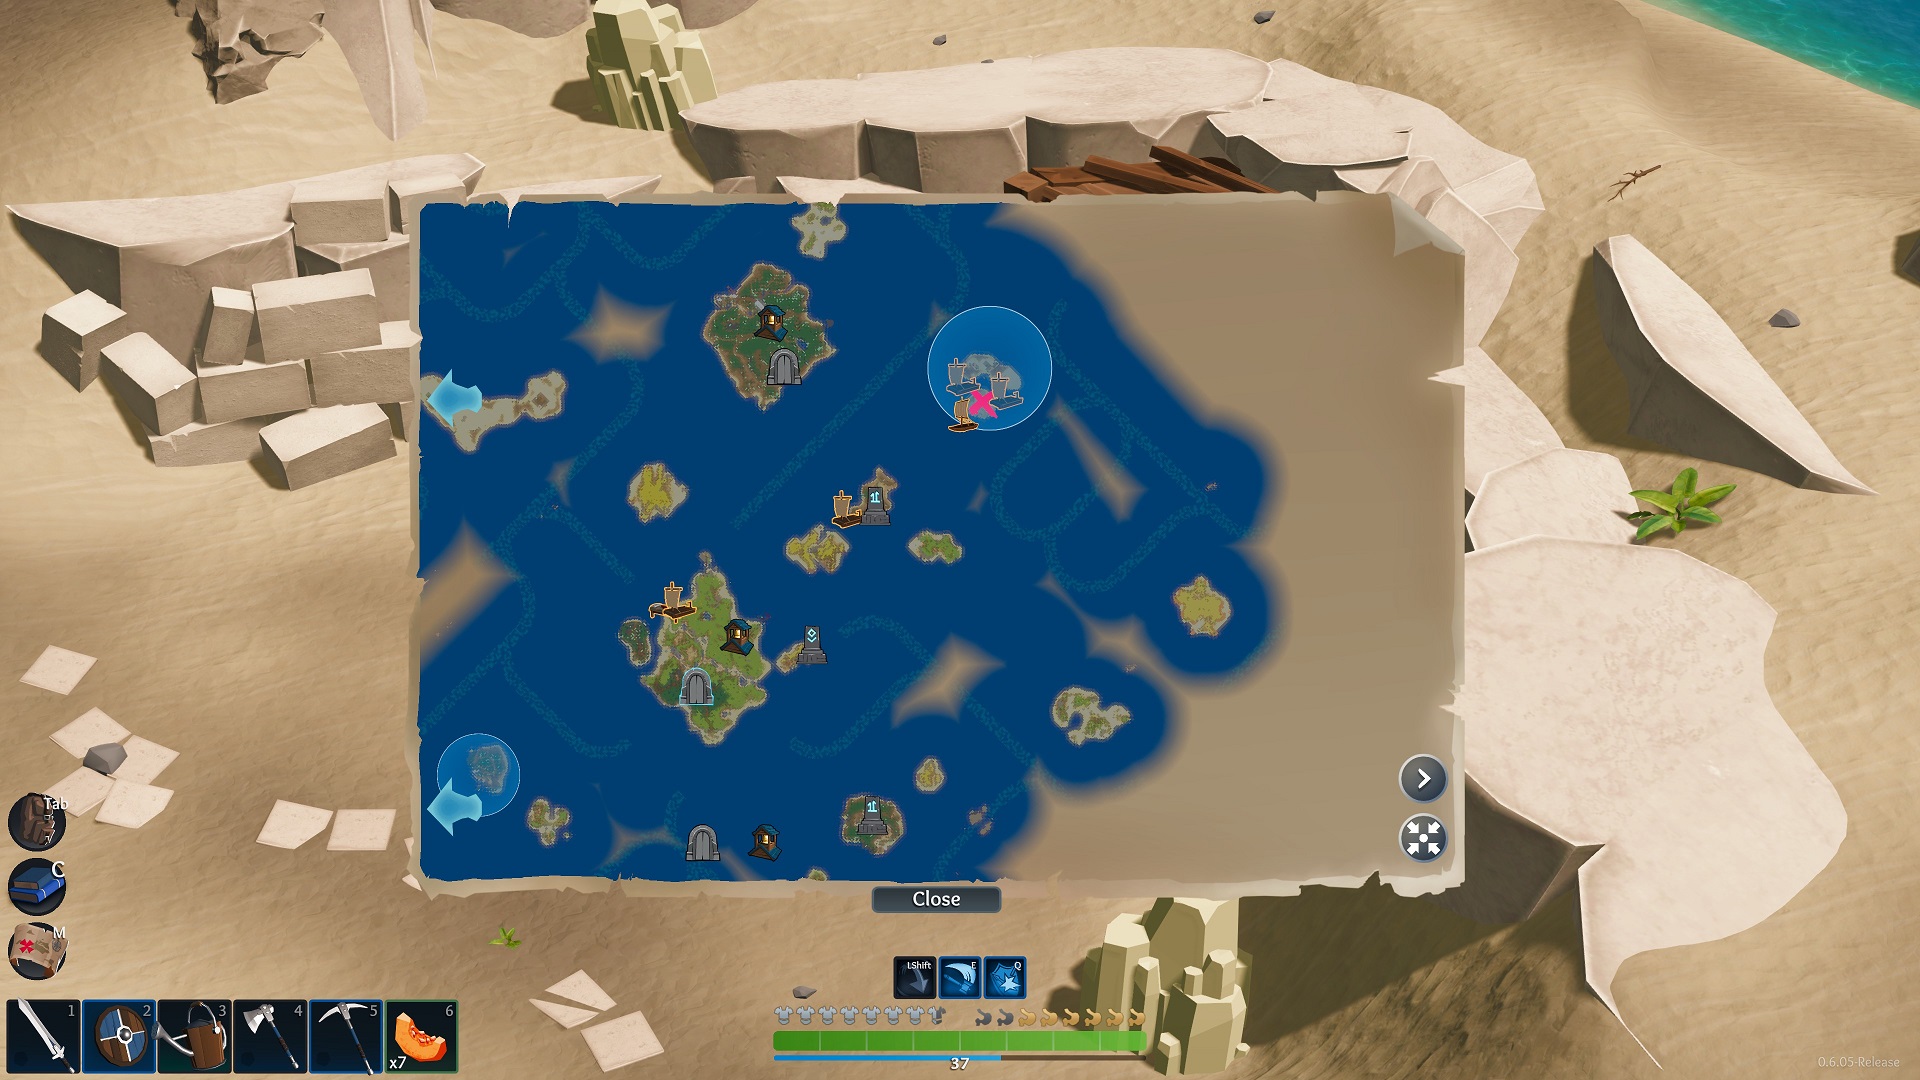 Hier seht ihr die glorreiche Insel auf der Übersichtskarte. Das rote X markiert die Stelle - Len's Island.